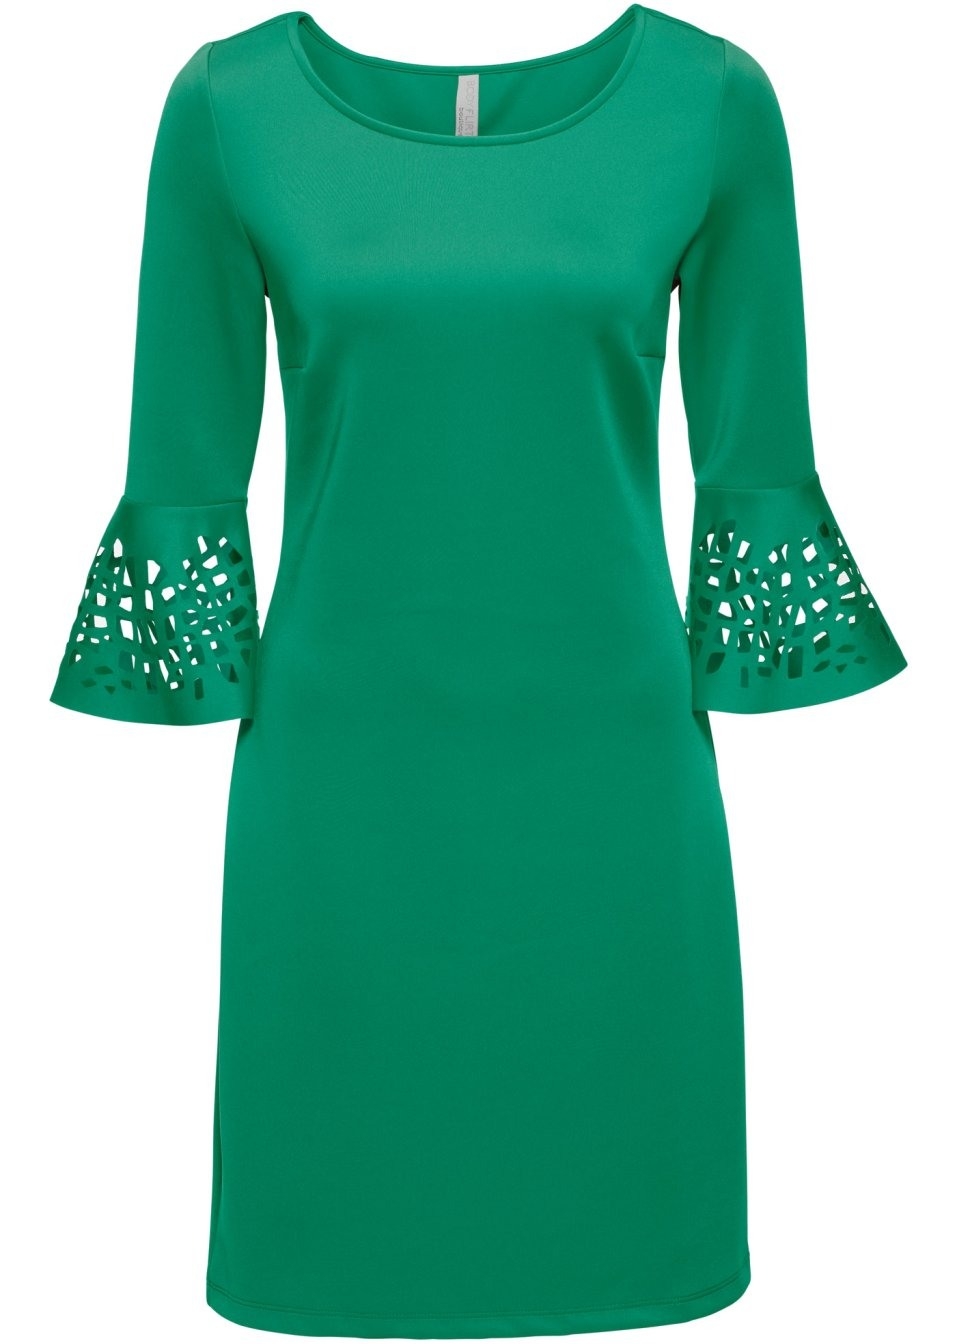 15 Genial Grünes Kleid Kurz Ärmel Coolste Grünes Kleid Kurz Spezialgebiet